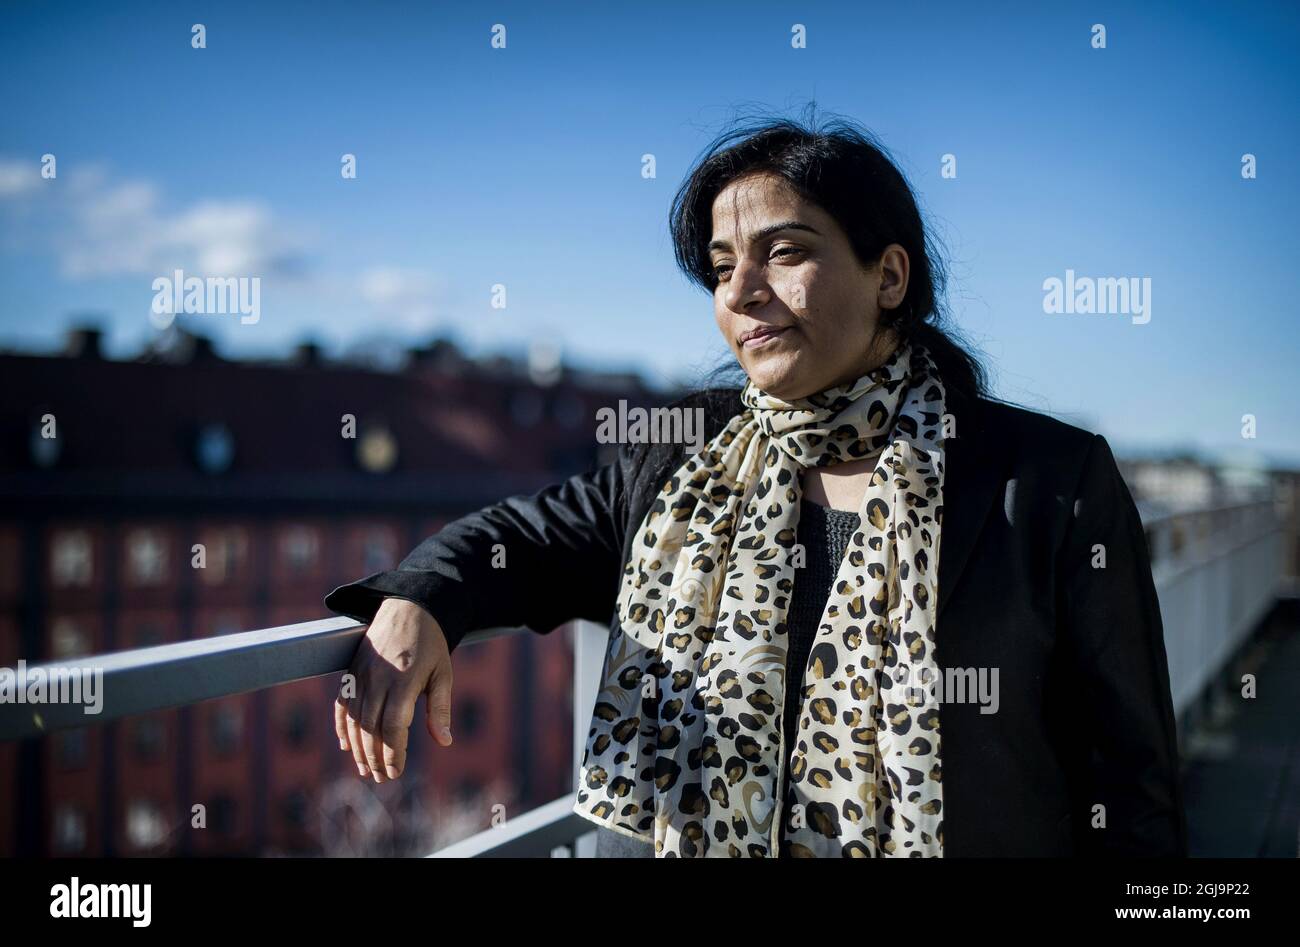 STOCKHOLM 20160316 Malalai Joya est vu lors d'une interview avec TT News  Agency à Stockholm, Suède, le 17 mars 2016. Joya est militante, écrivain et  ancienne politicienne d'Afghanistan, où elle a été